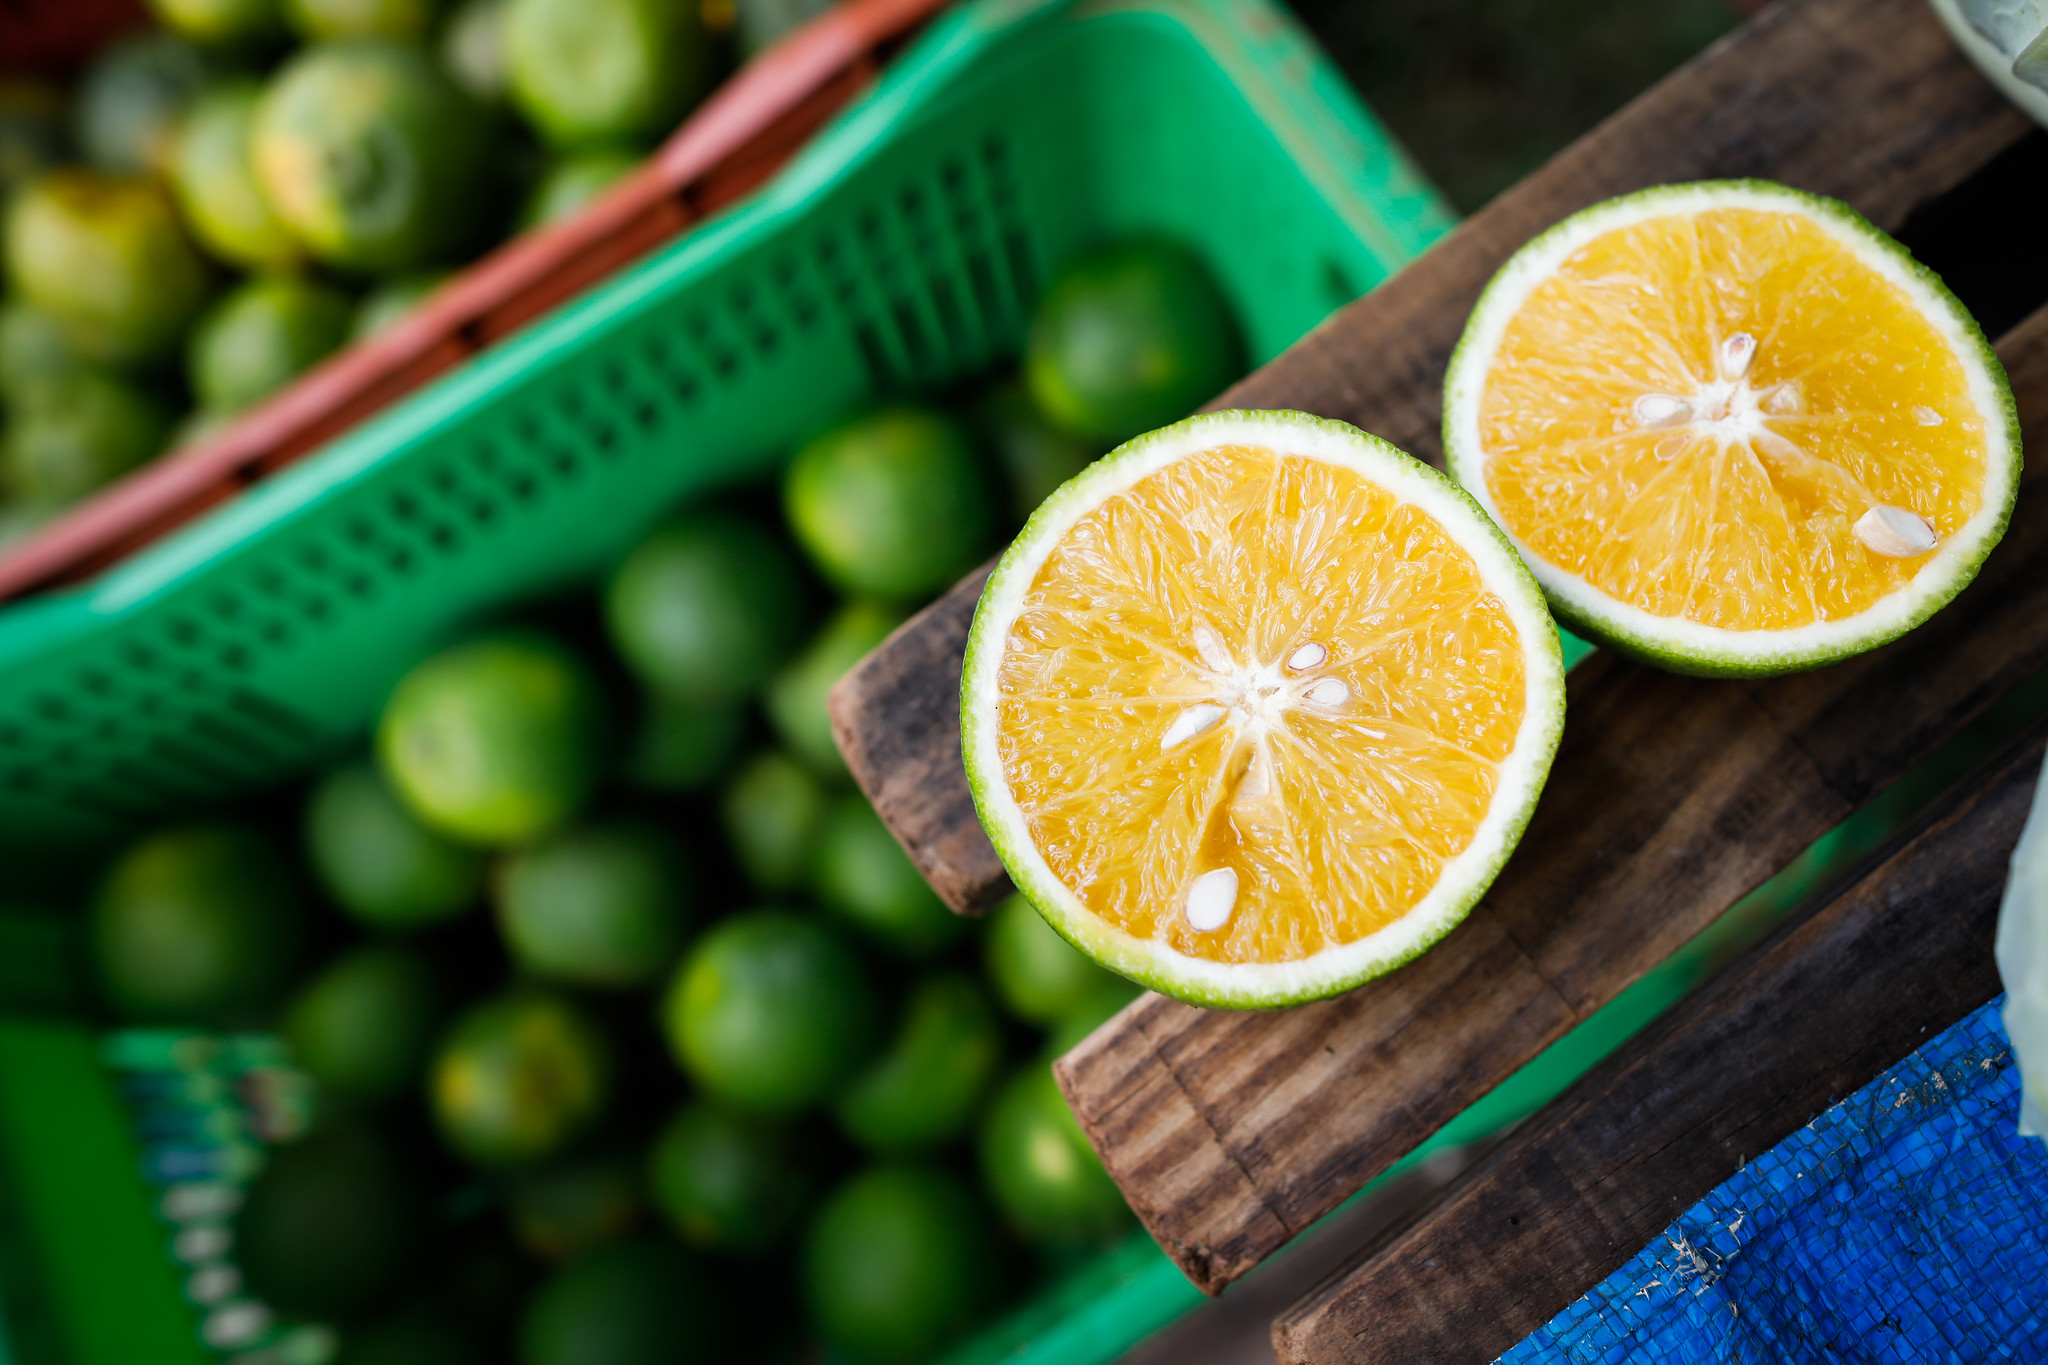 Qualidade das frutas, principalmente o calibre, também tem influenciado os preços. - Foto: CNA